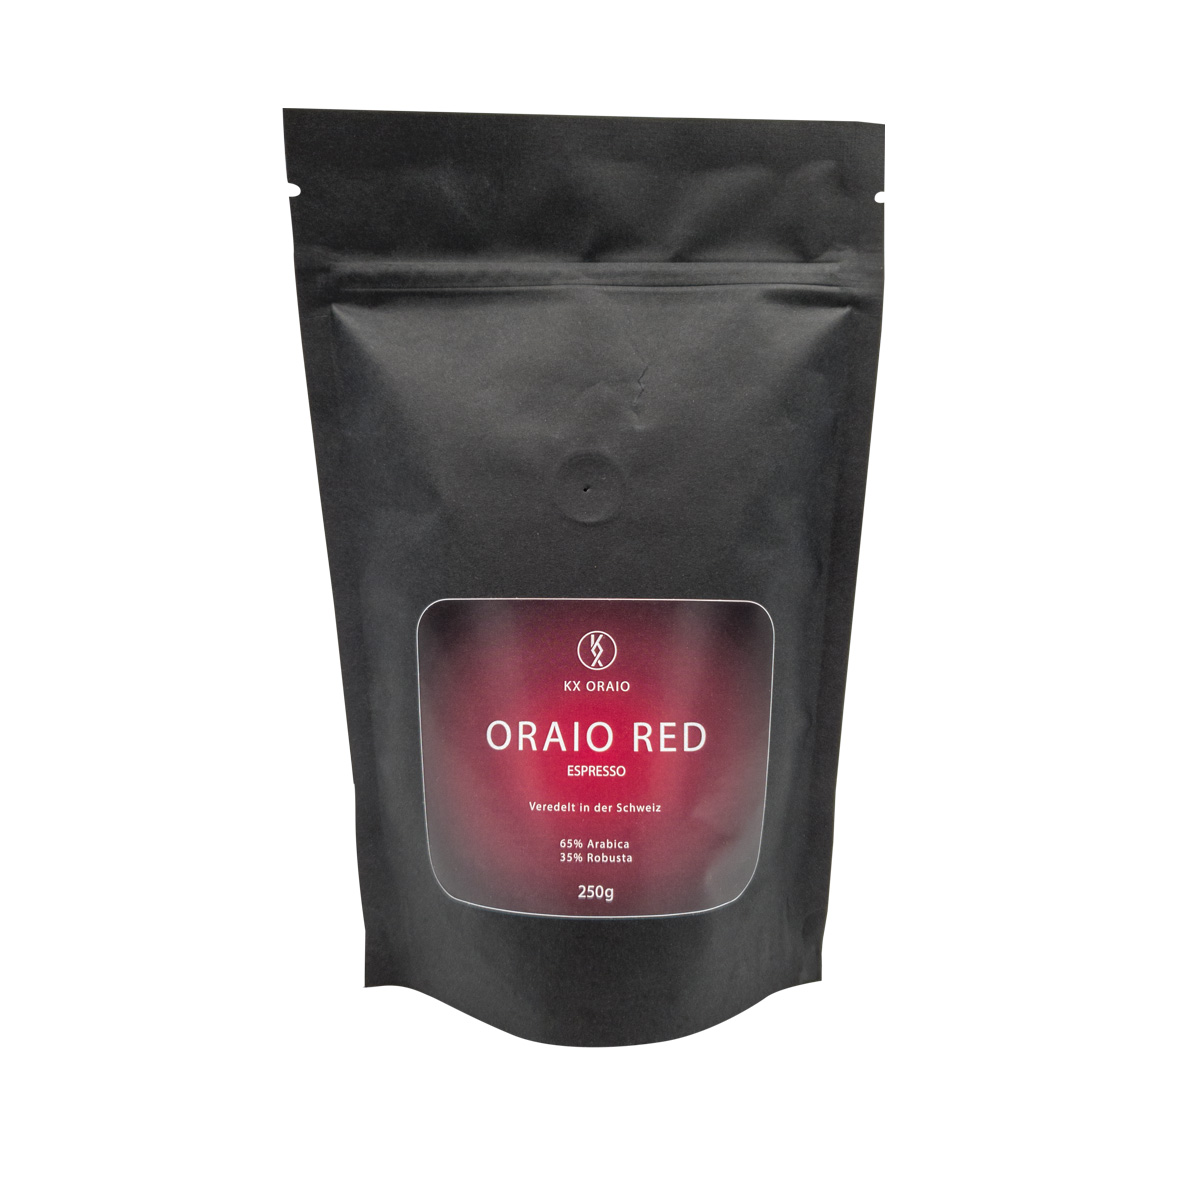 ORAIO RED Espresso